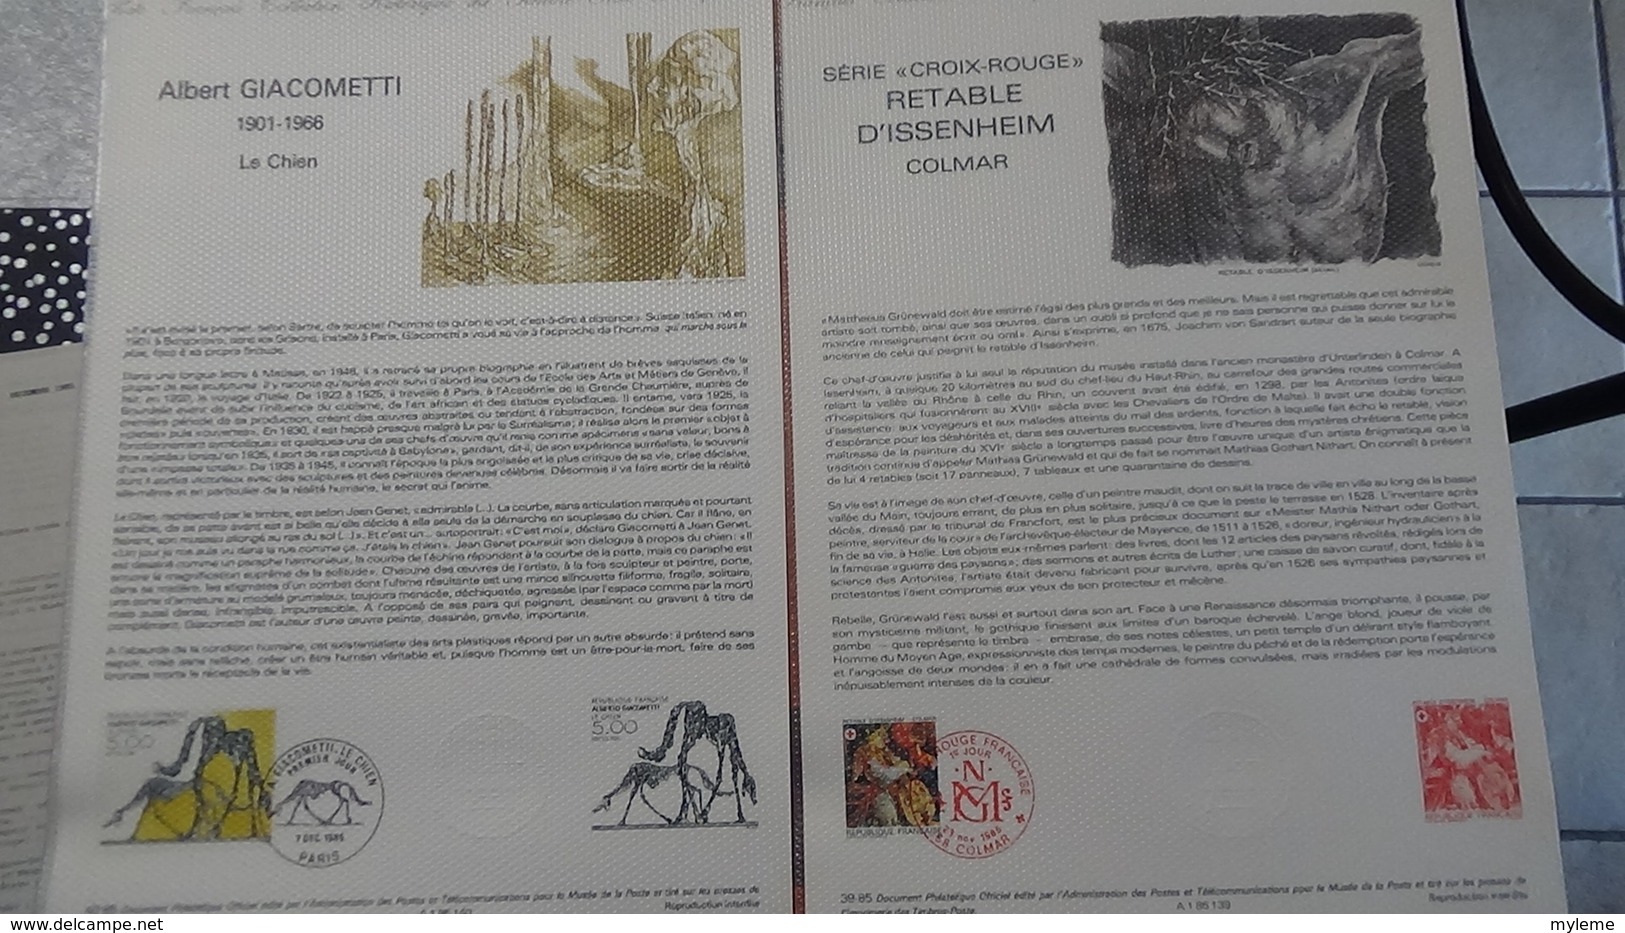 Lot de 34 documents philatéliques de 1985 Côte catalogue 2003 : 391 euros.PORT 8.95€ OFFERT. A saisir !!!